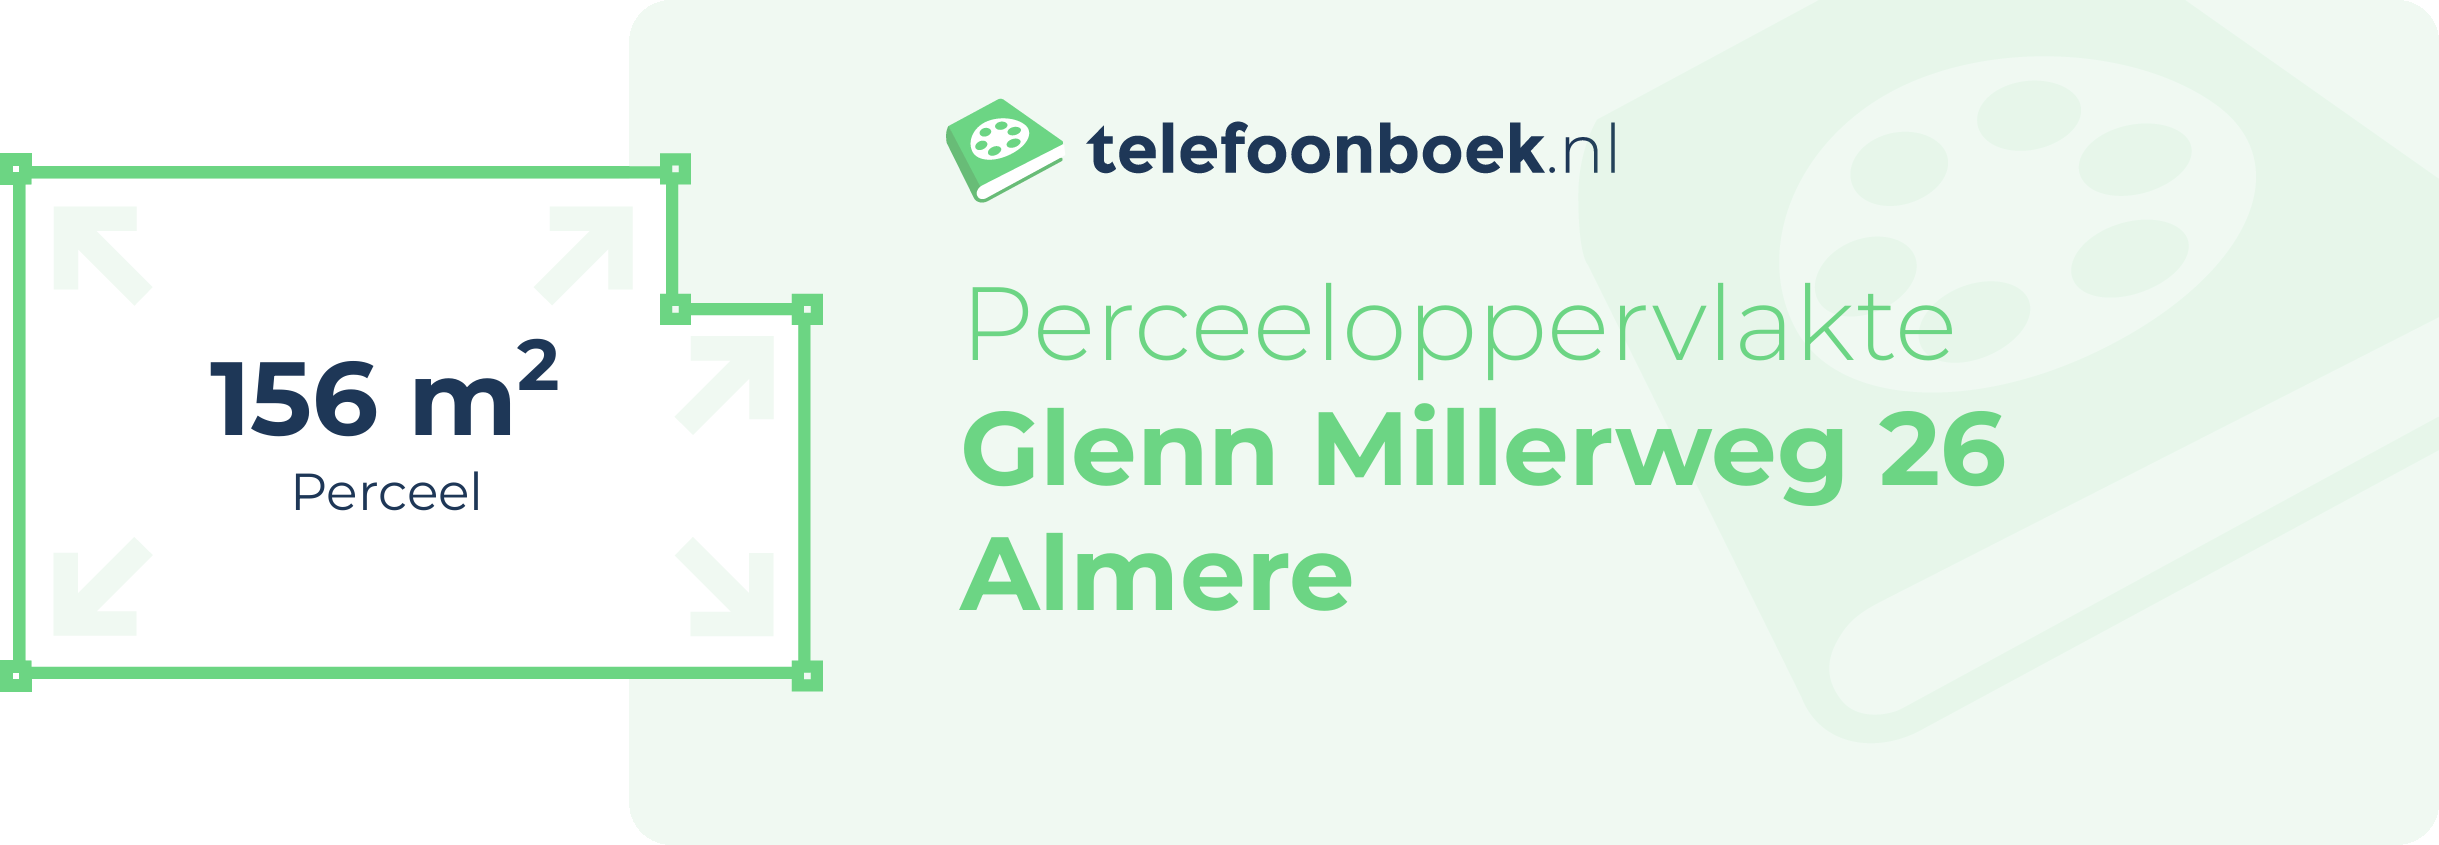 Perceeloppervlakte Glenn Millerweg 26 Almere